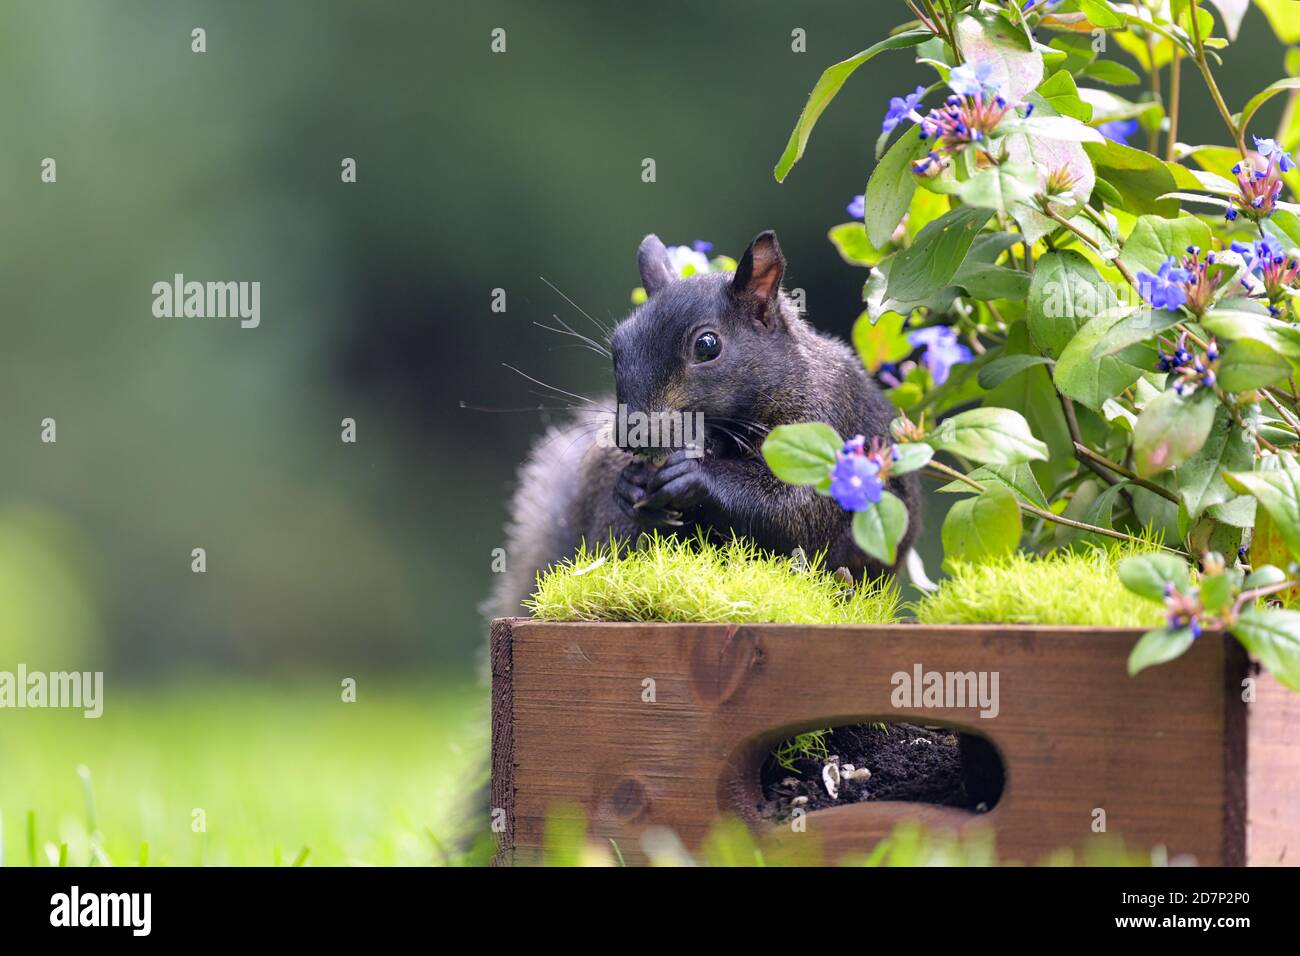 Un écureuil noir mangeant des graines parmi quelques fleurs pourpres Banque D'Images